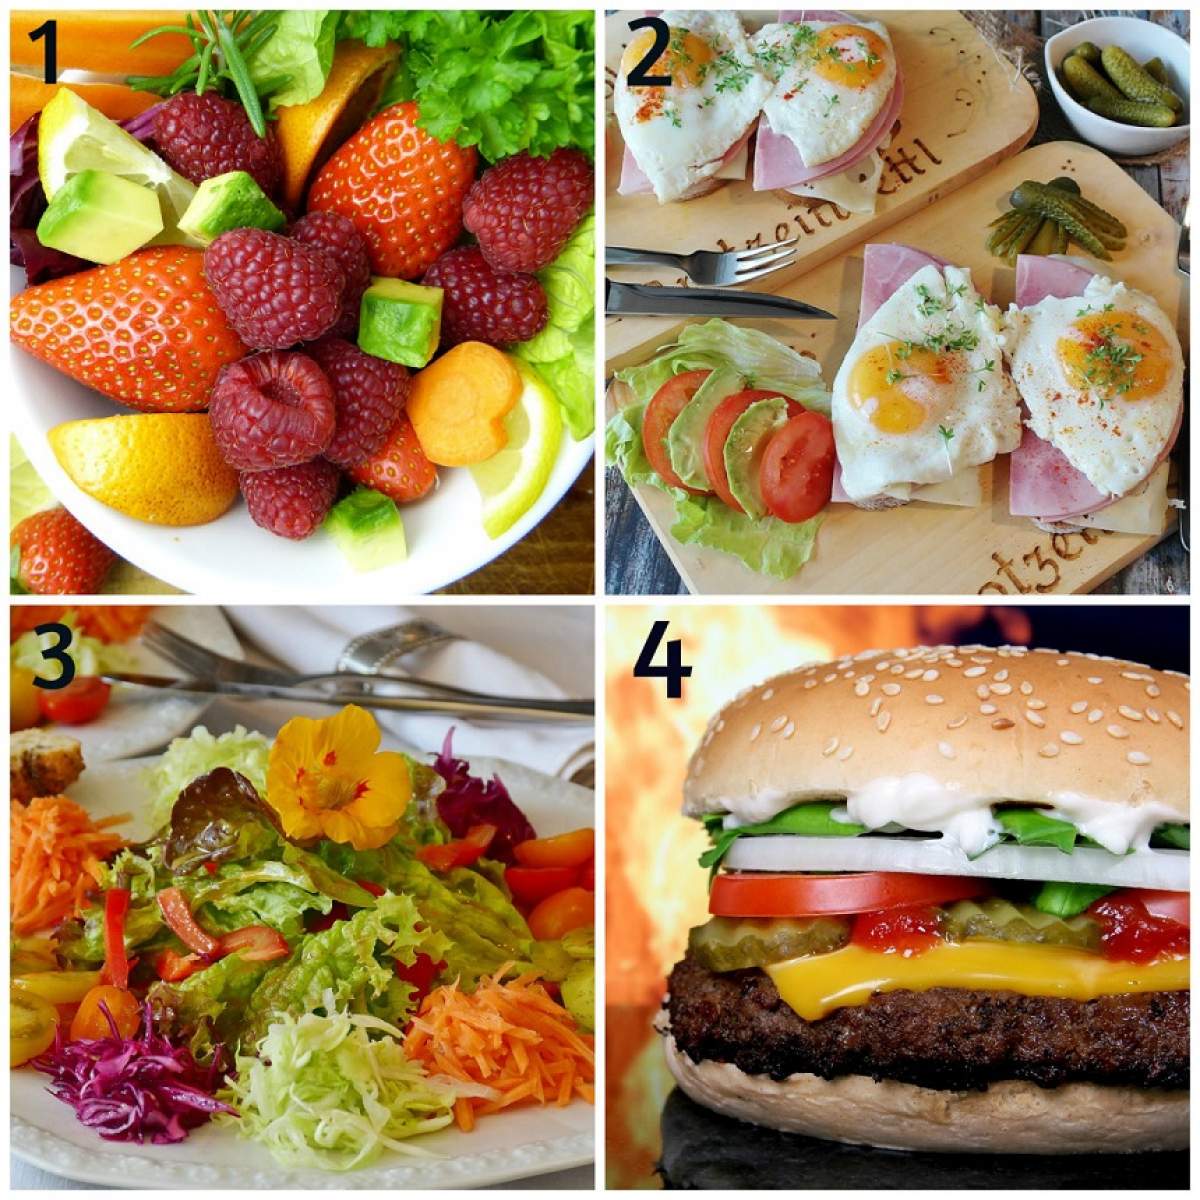 FOTO / TEST: Tu ce mănânci de obicei? Alege o imagine și află cât de sănătos e corpul tău